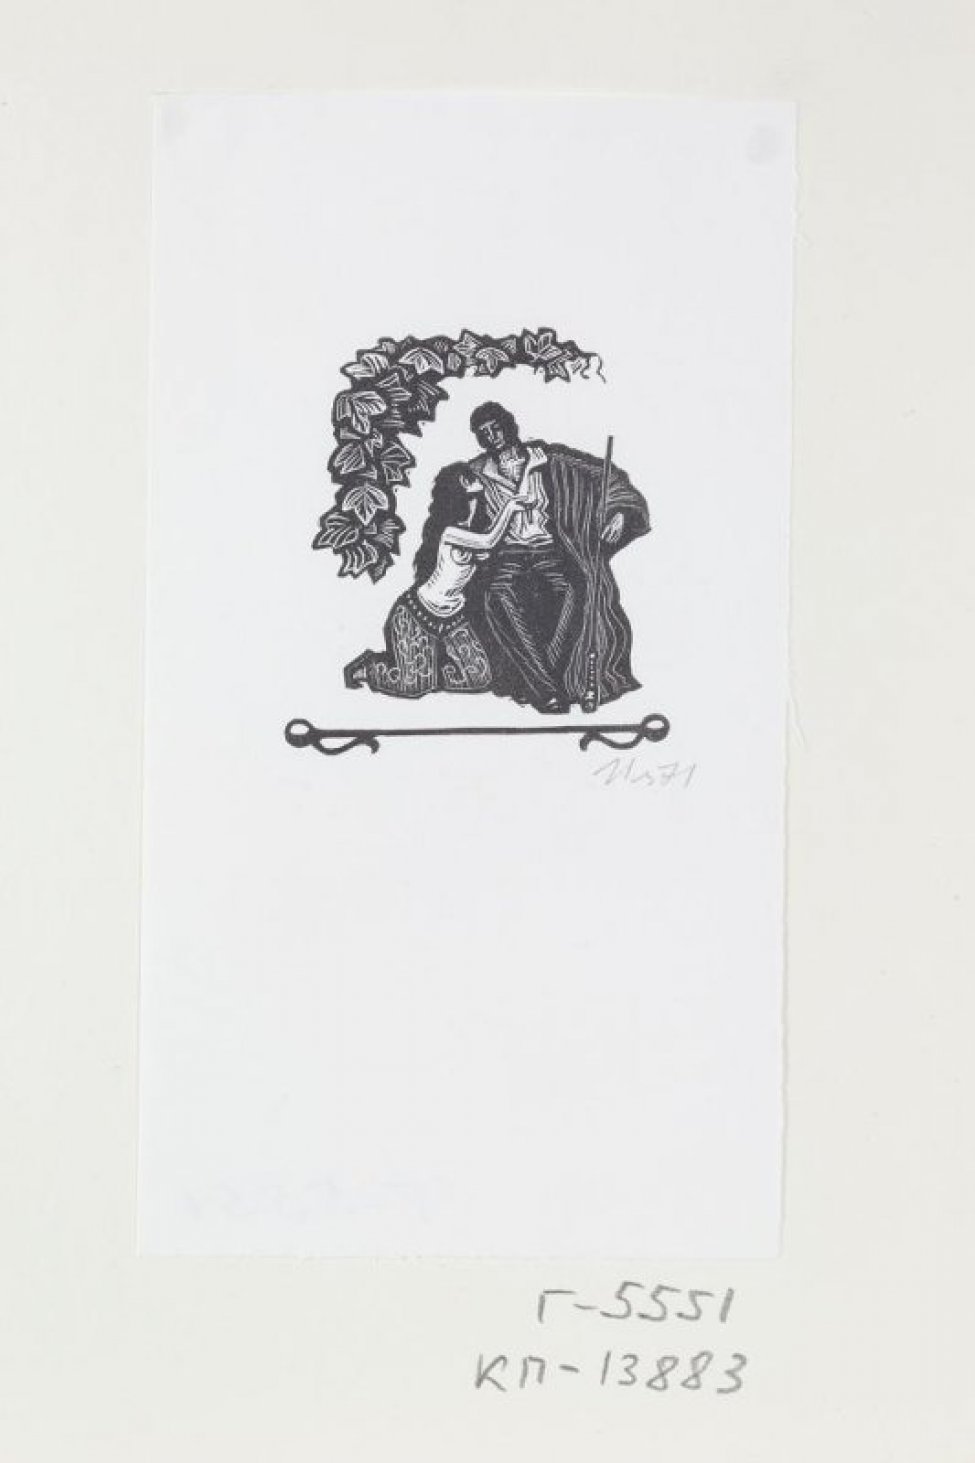 Изображены полуобнаженная женщина, стоящая на коленях, и мужчина с кальяном в руке. Над ними - виноградная лоза.